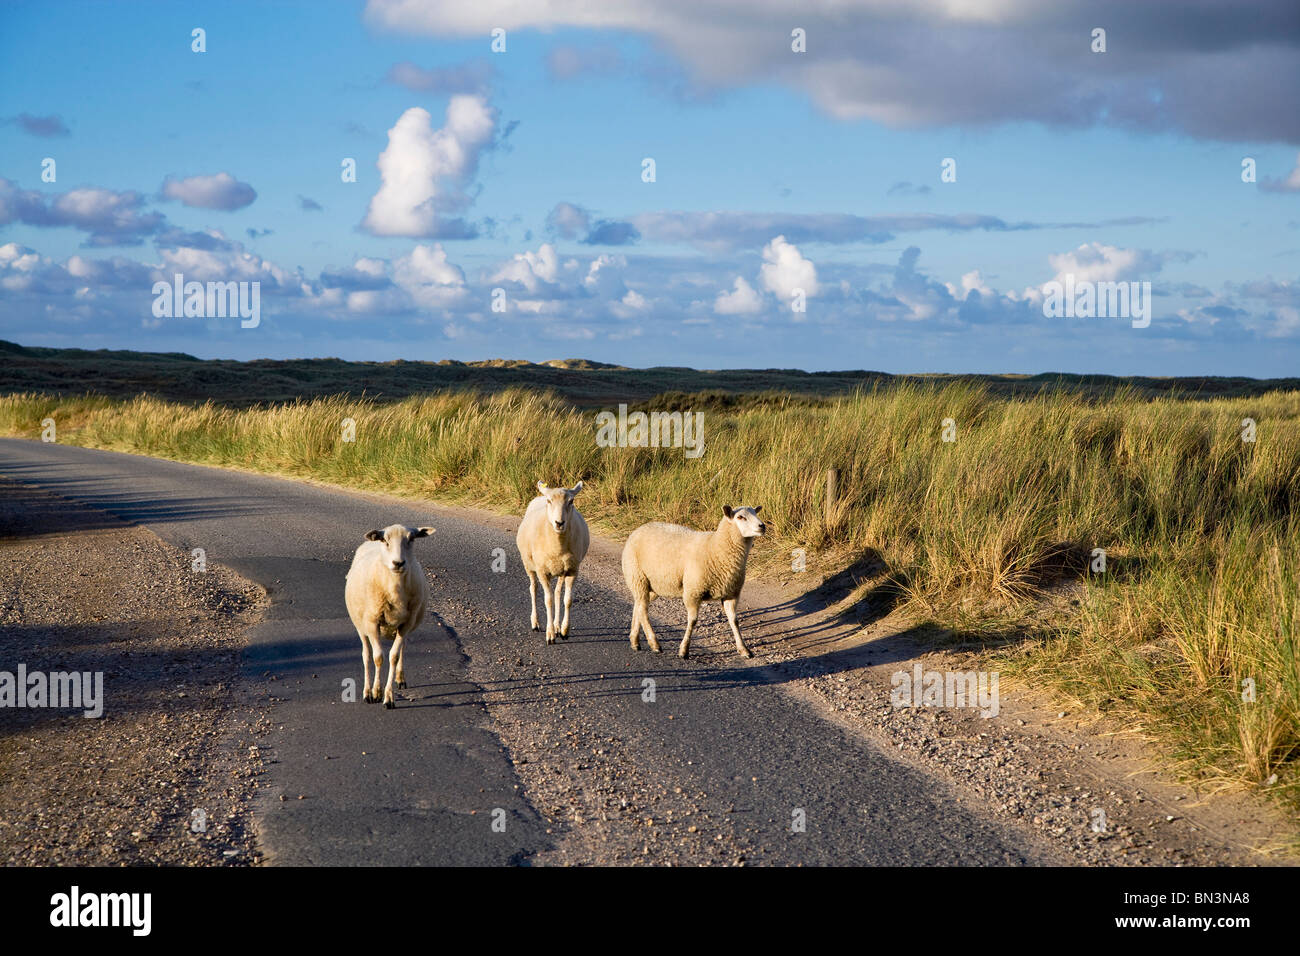 Moutons sur la route, Ellenbogen, Sylt, Allemagne Banque D'Images